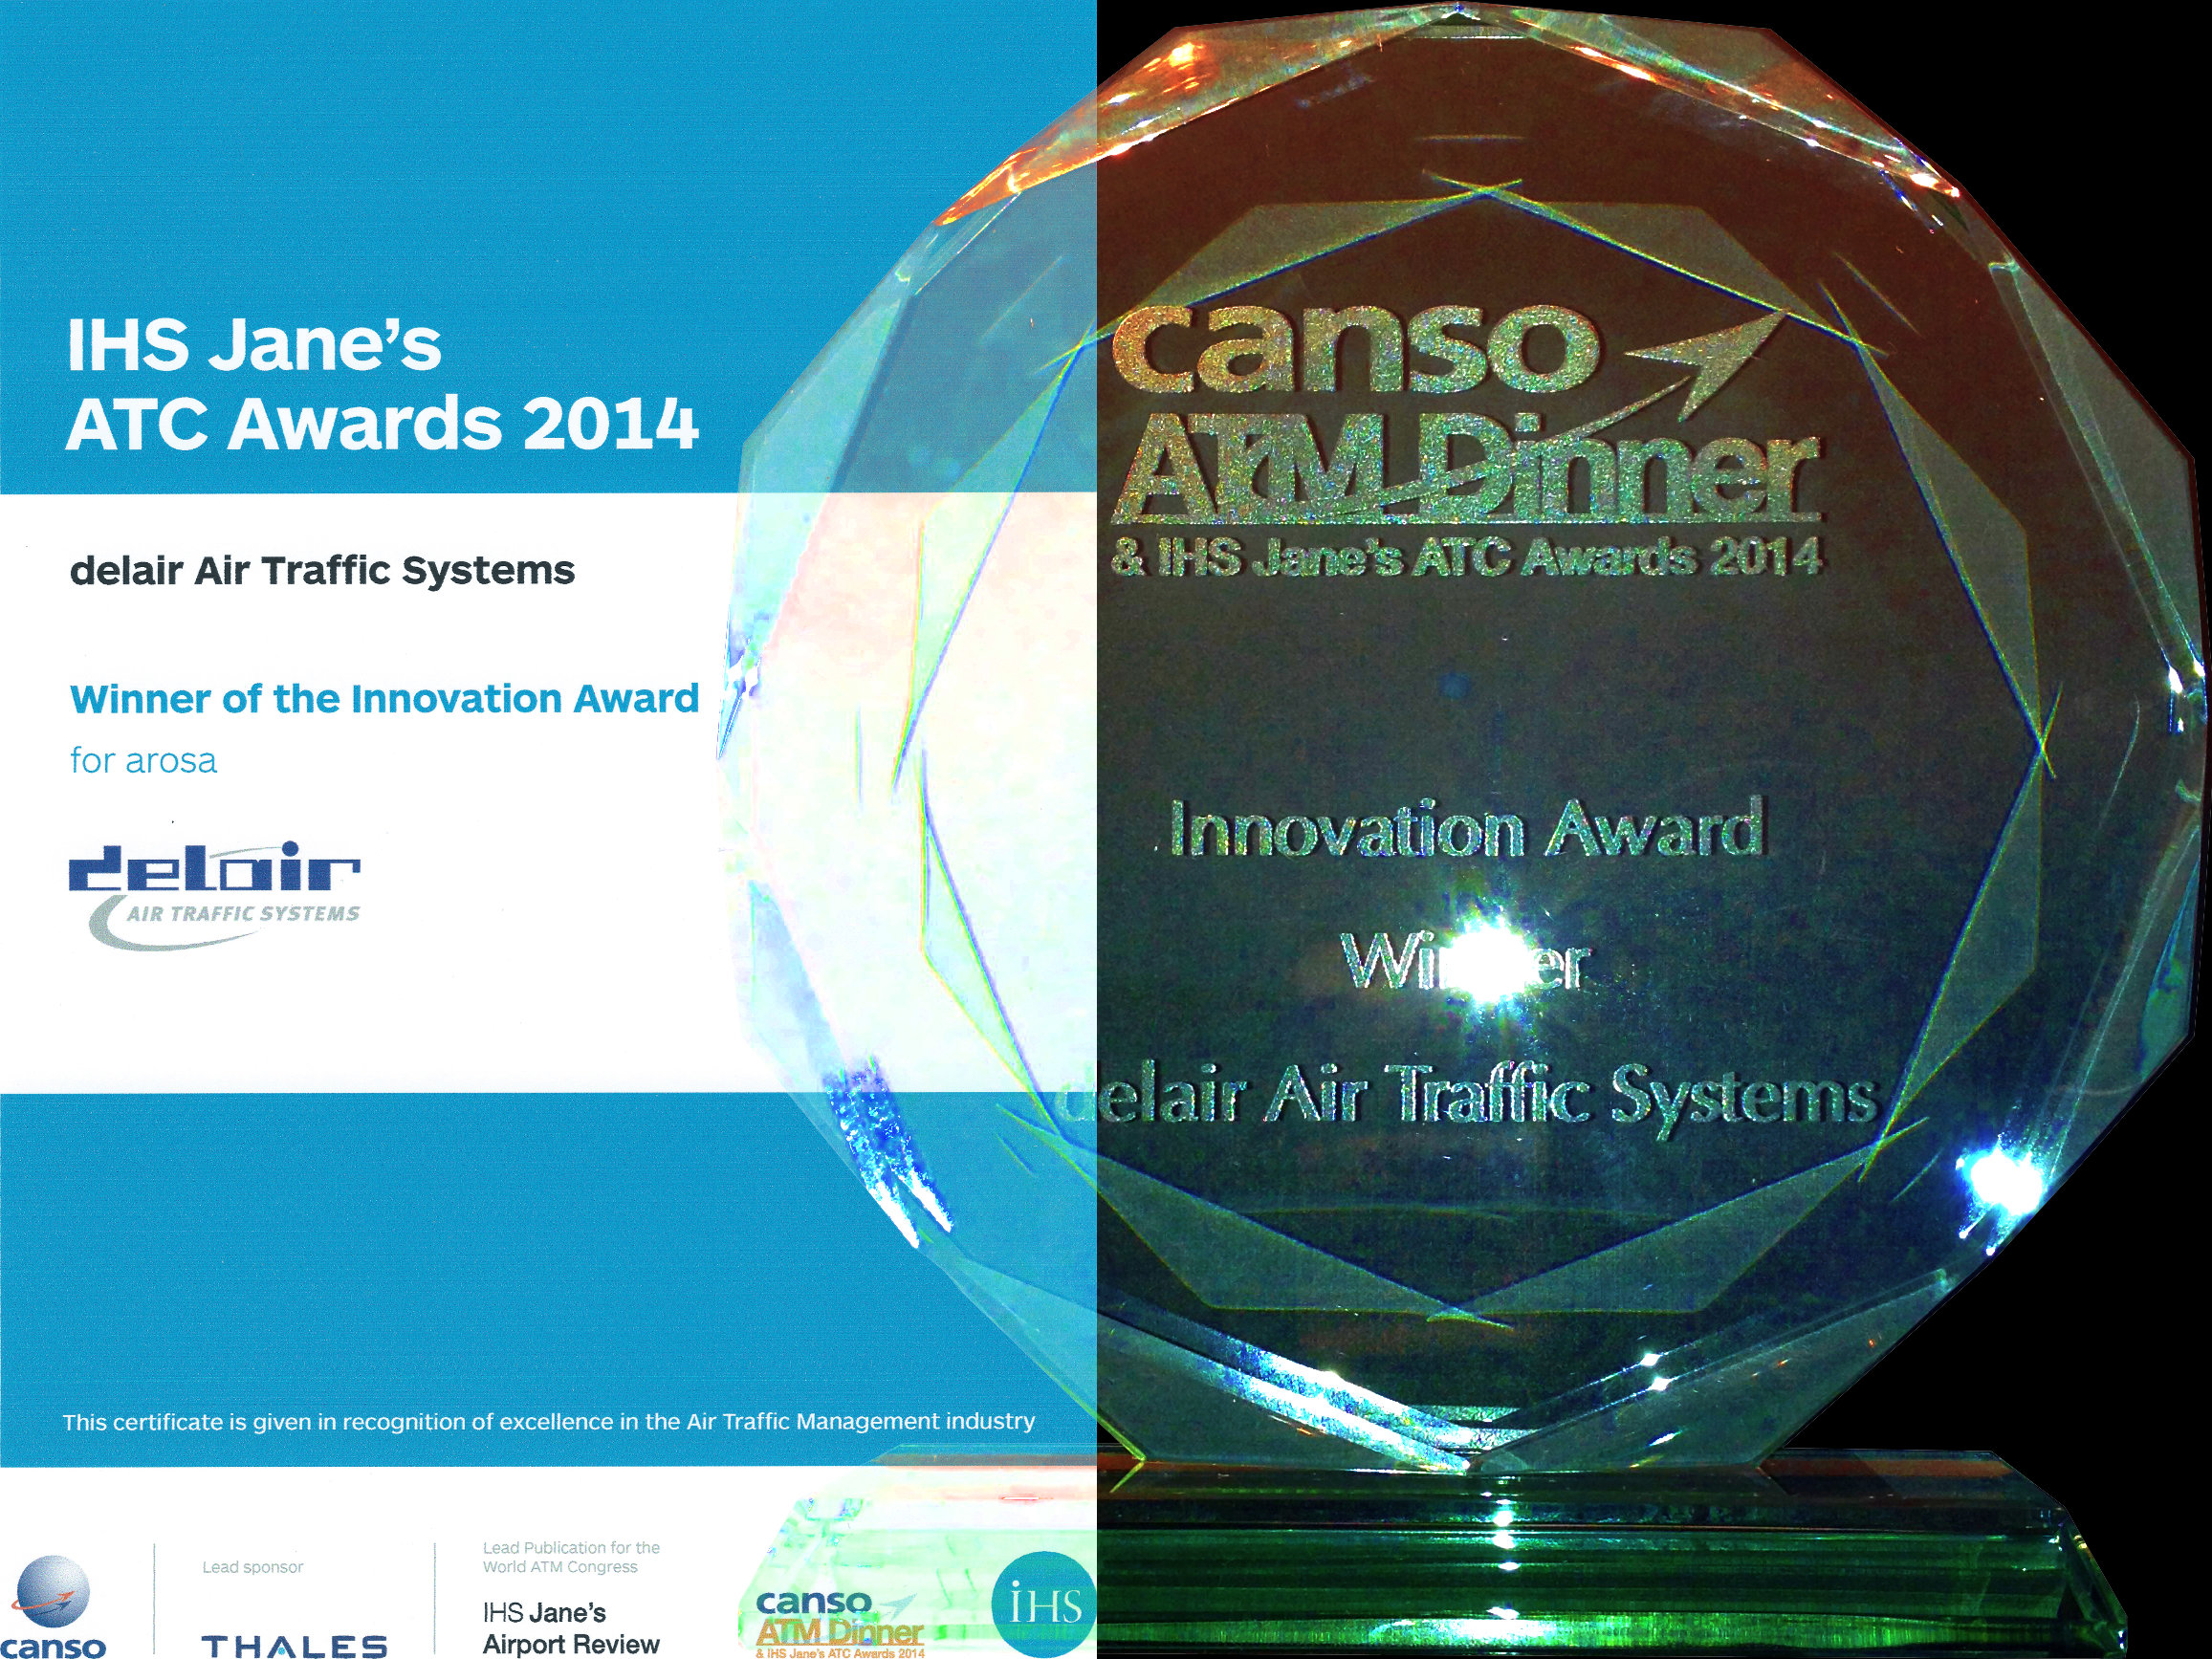 IHS Janes Innovation Award 2014